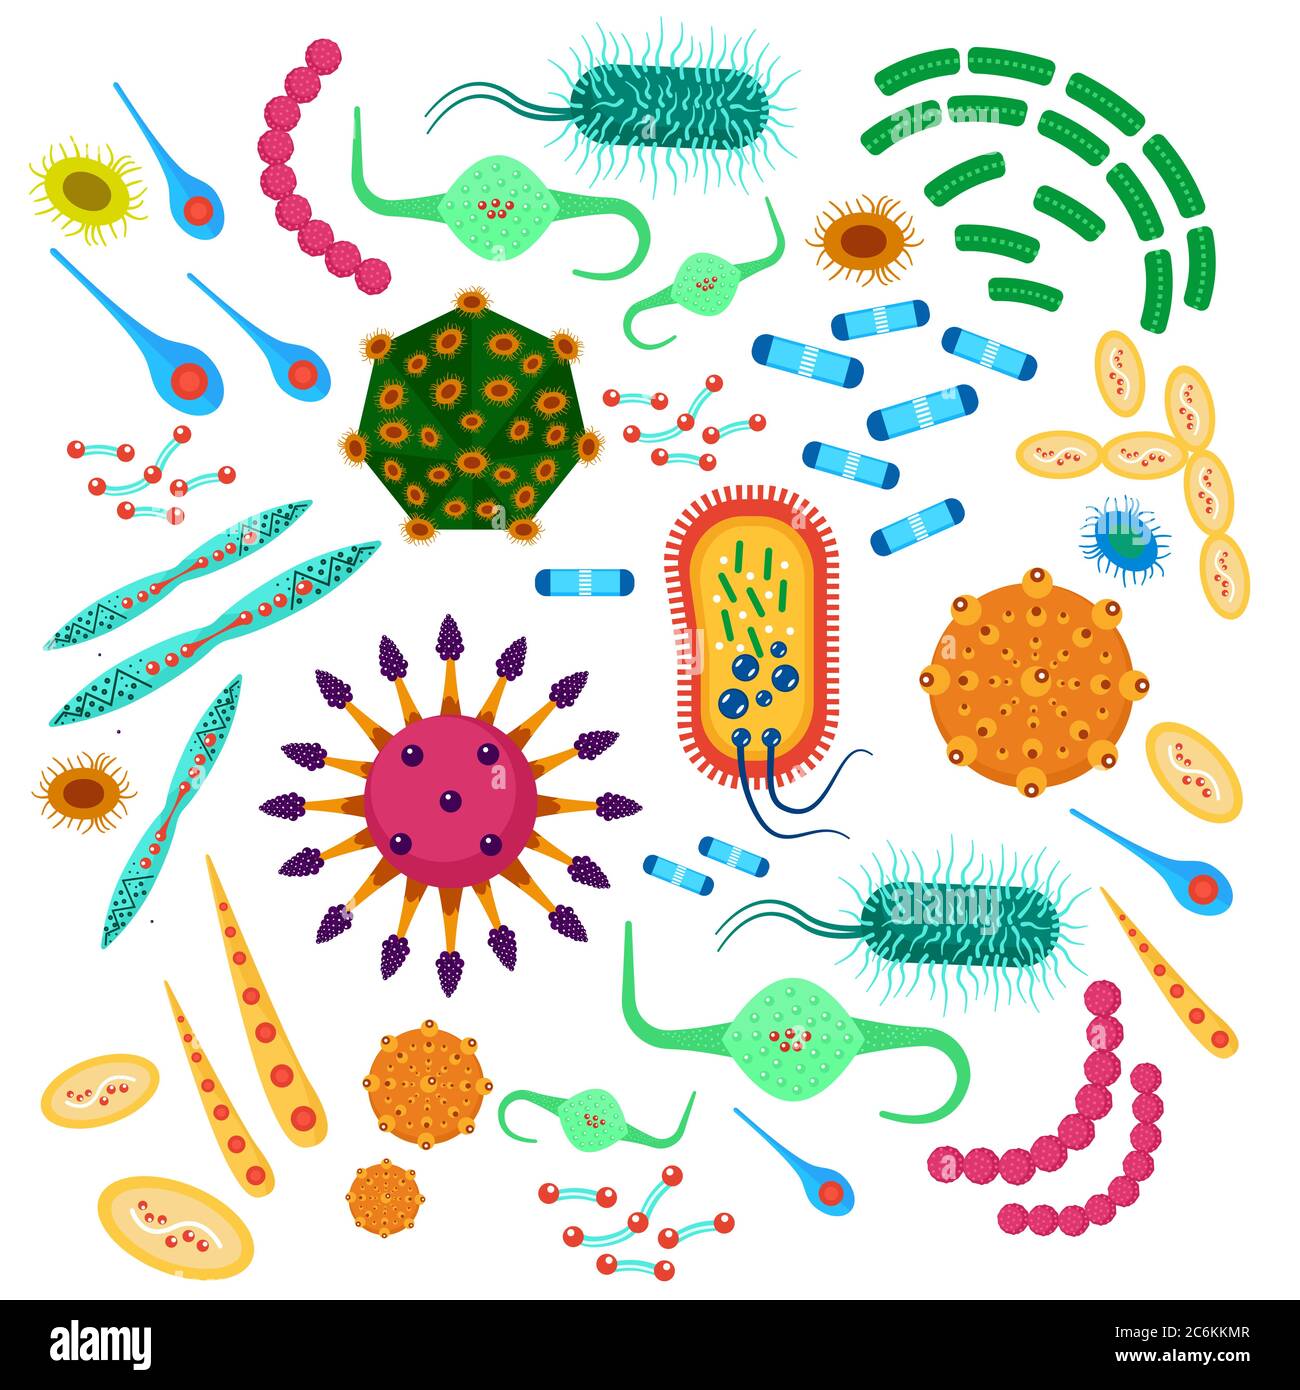 Collection de virus de bactéries vectorielles. Microbiologie superbug, micro-organismes et microbes infection épidémique bactéries ensemble d'icônes Illustration de Vecteur